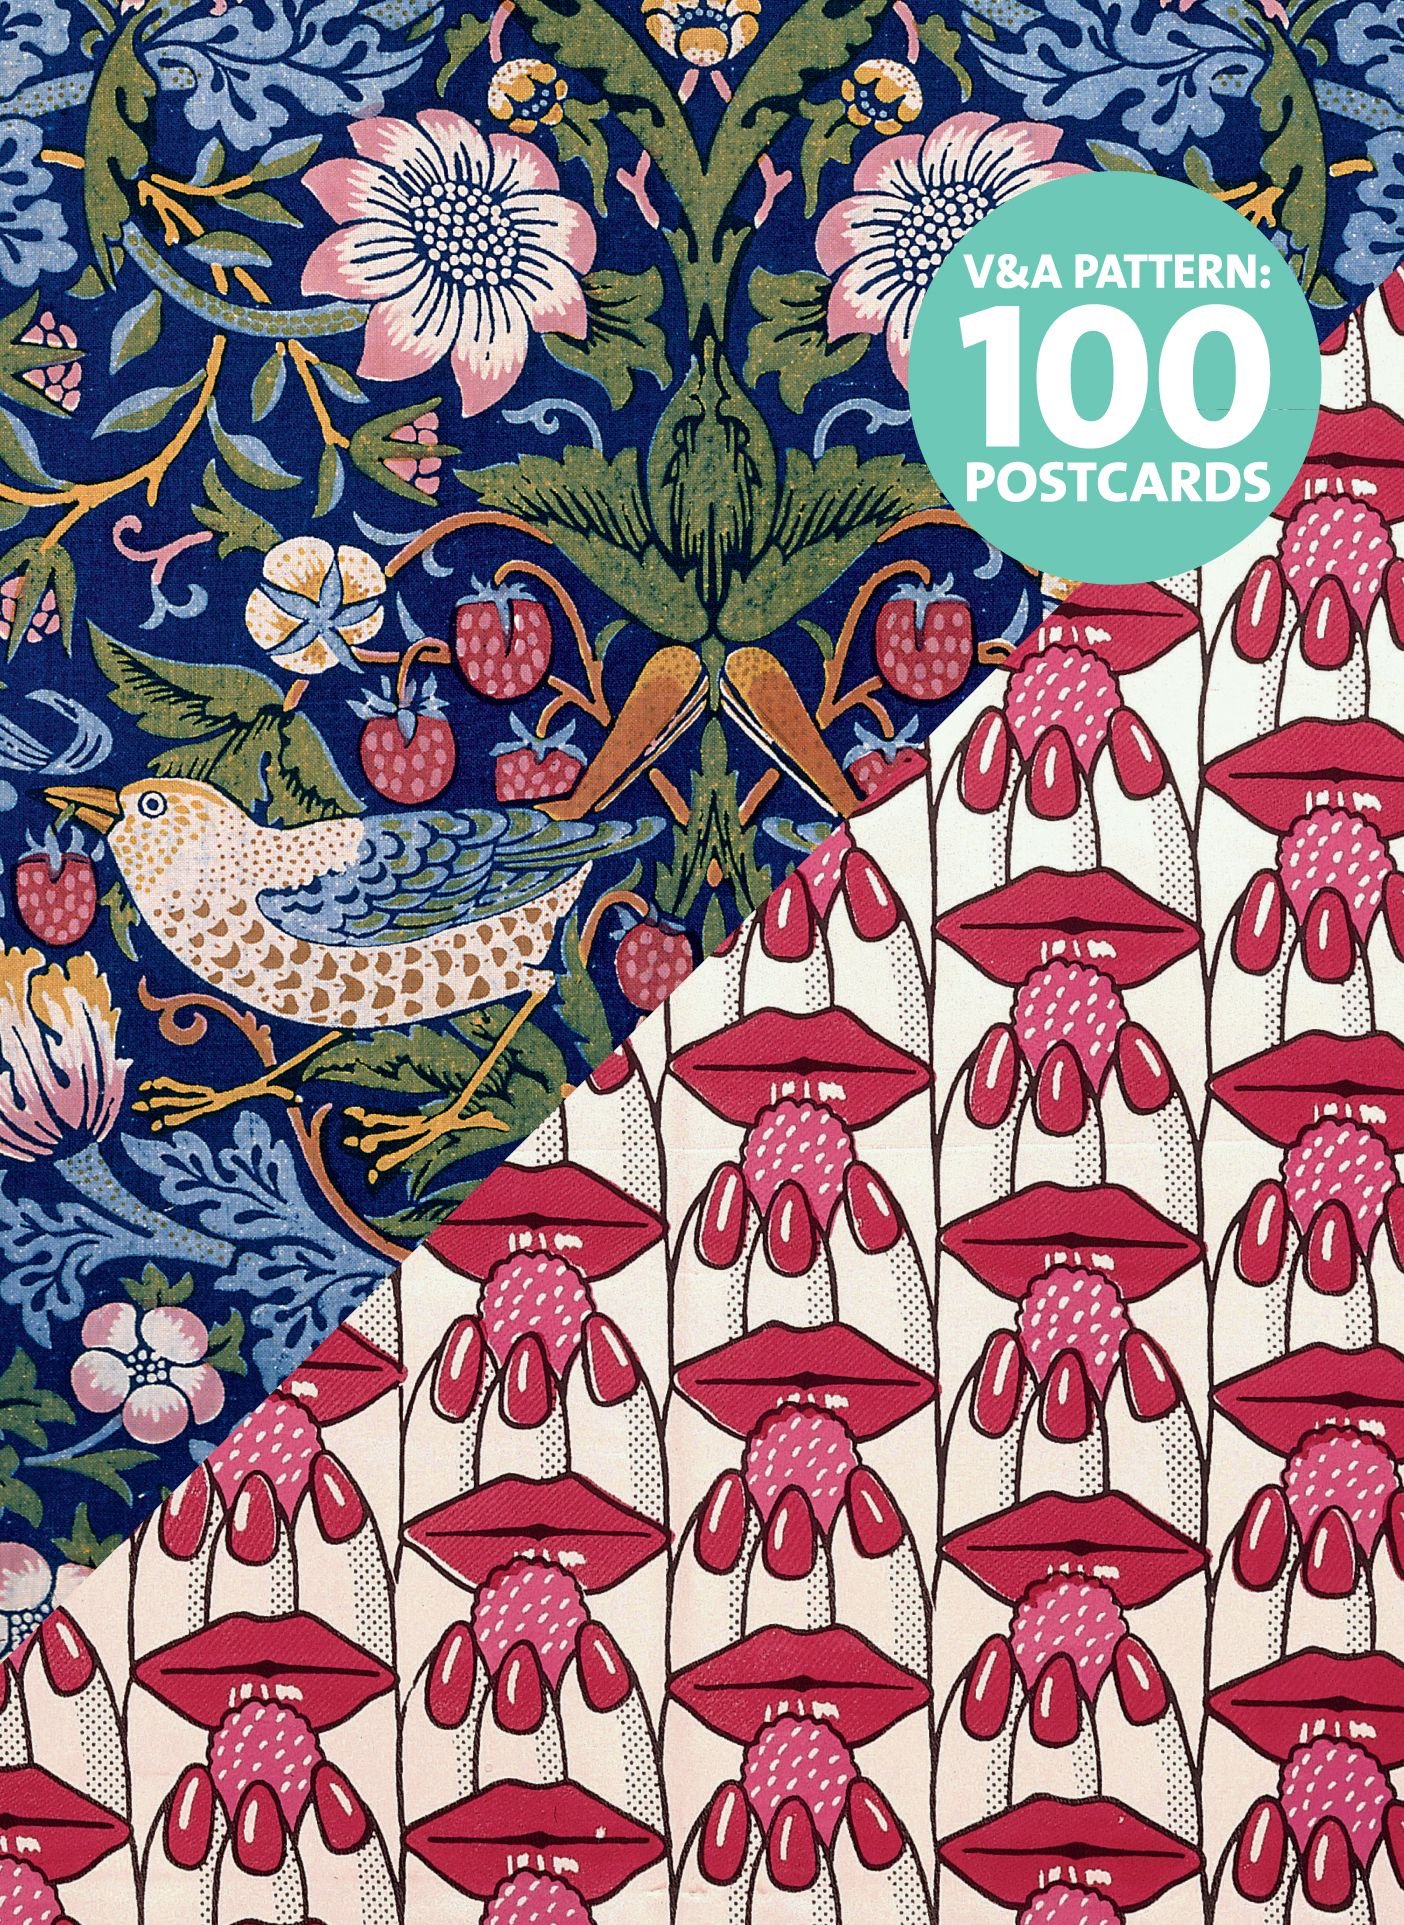 V&A Pattern: 100 Postcards